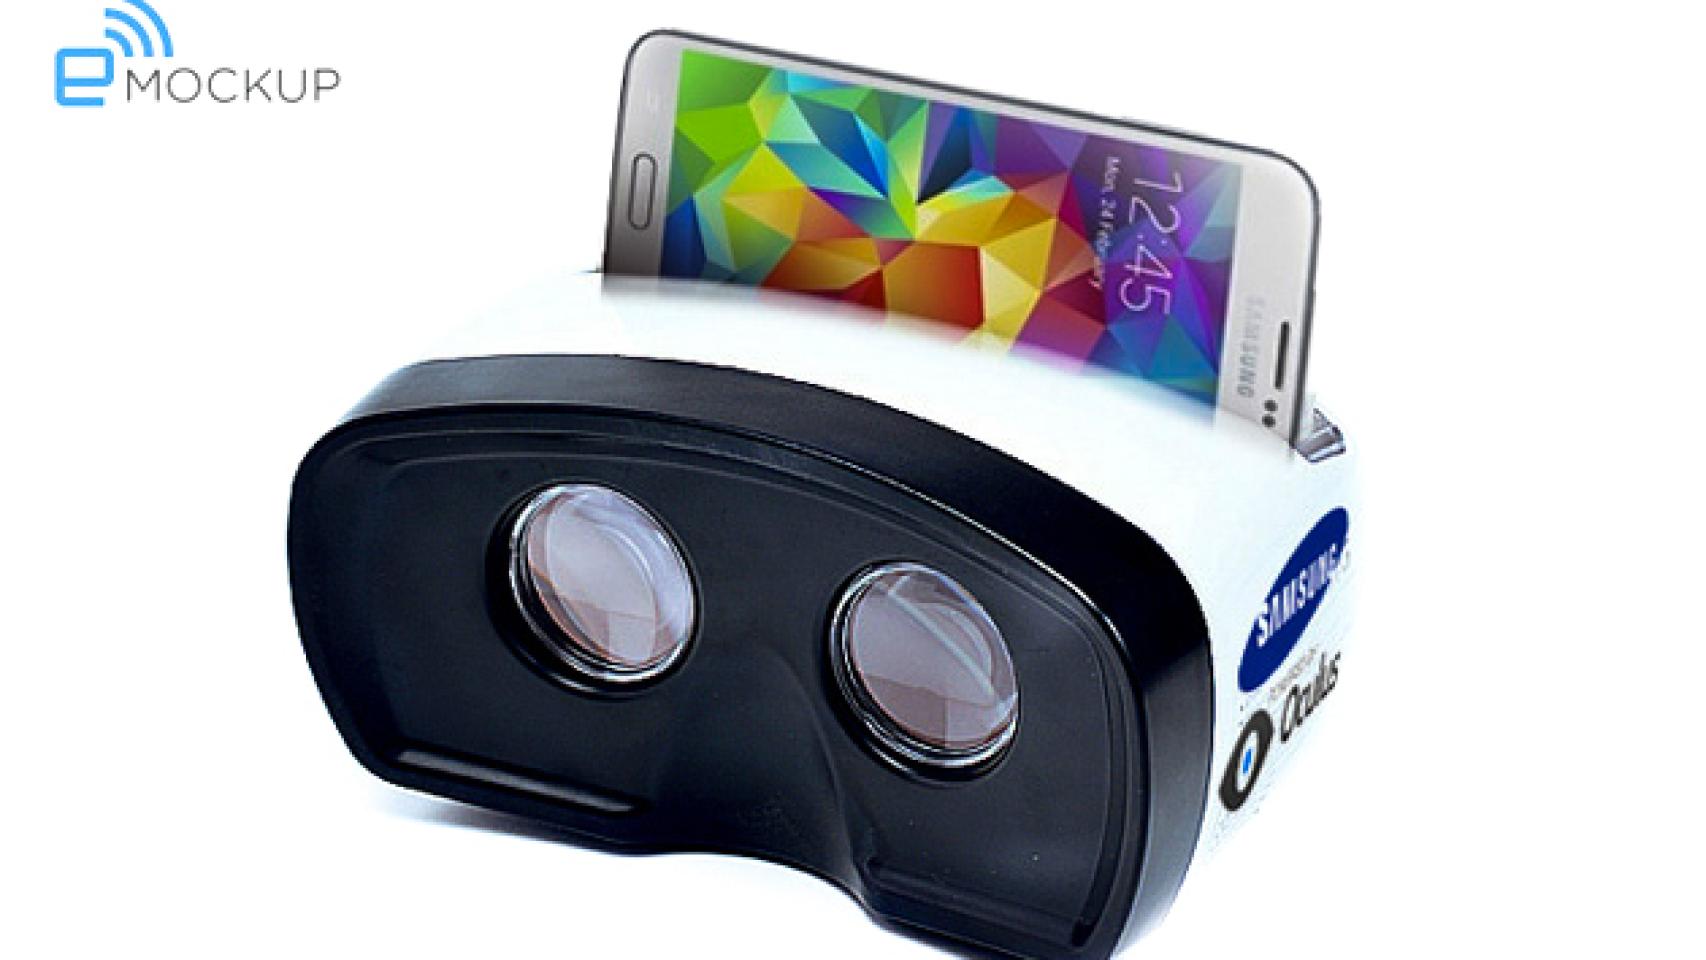 Samsung estaría preparando sus gafas-dock de realidad aumentada junto a Oculus